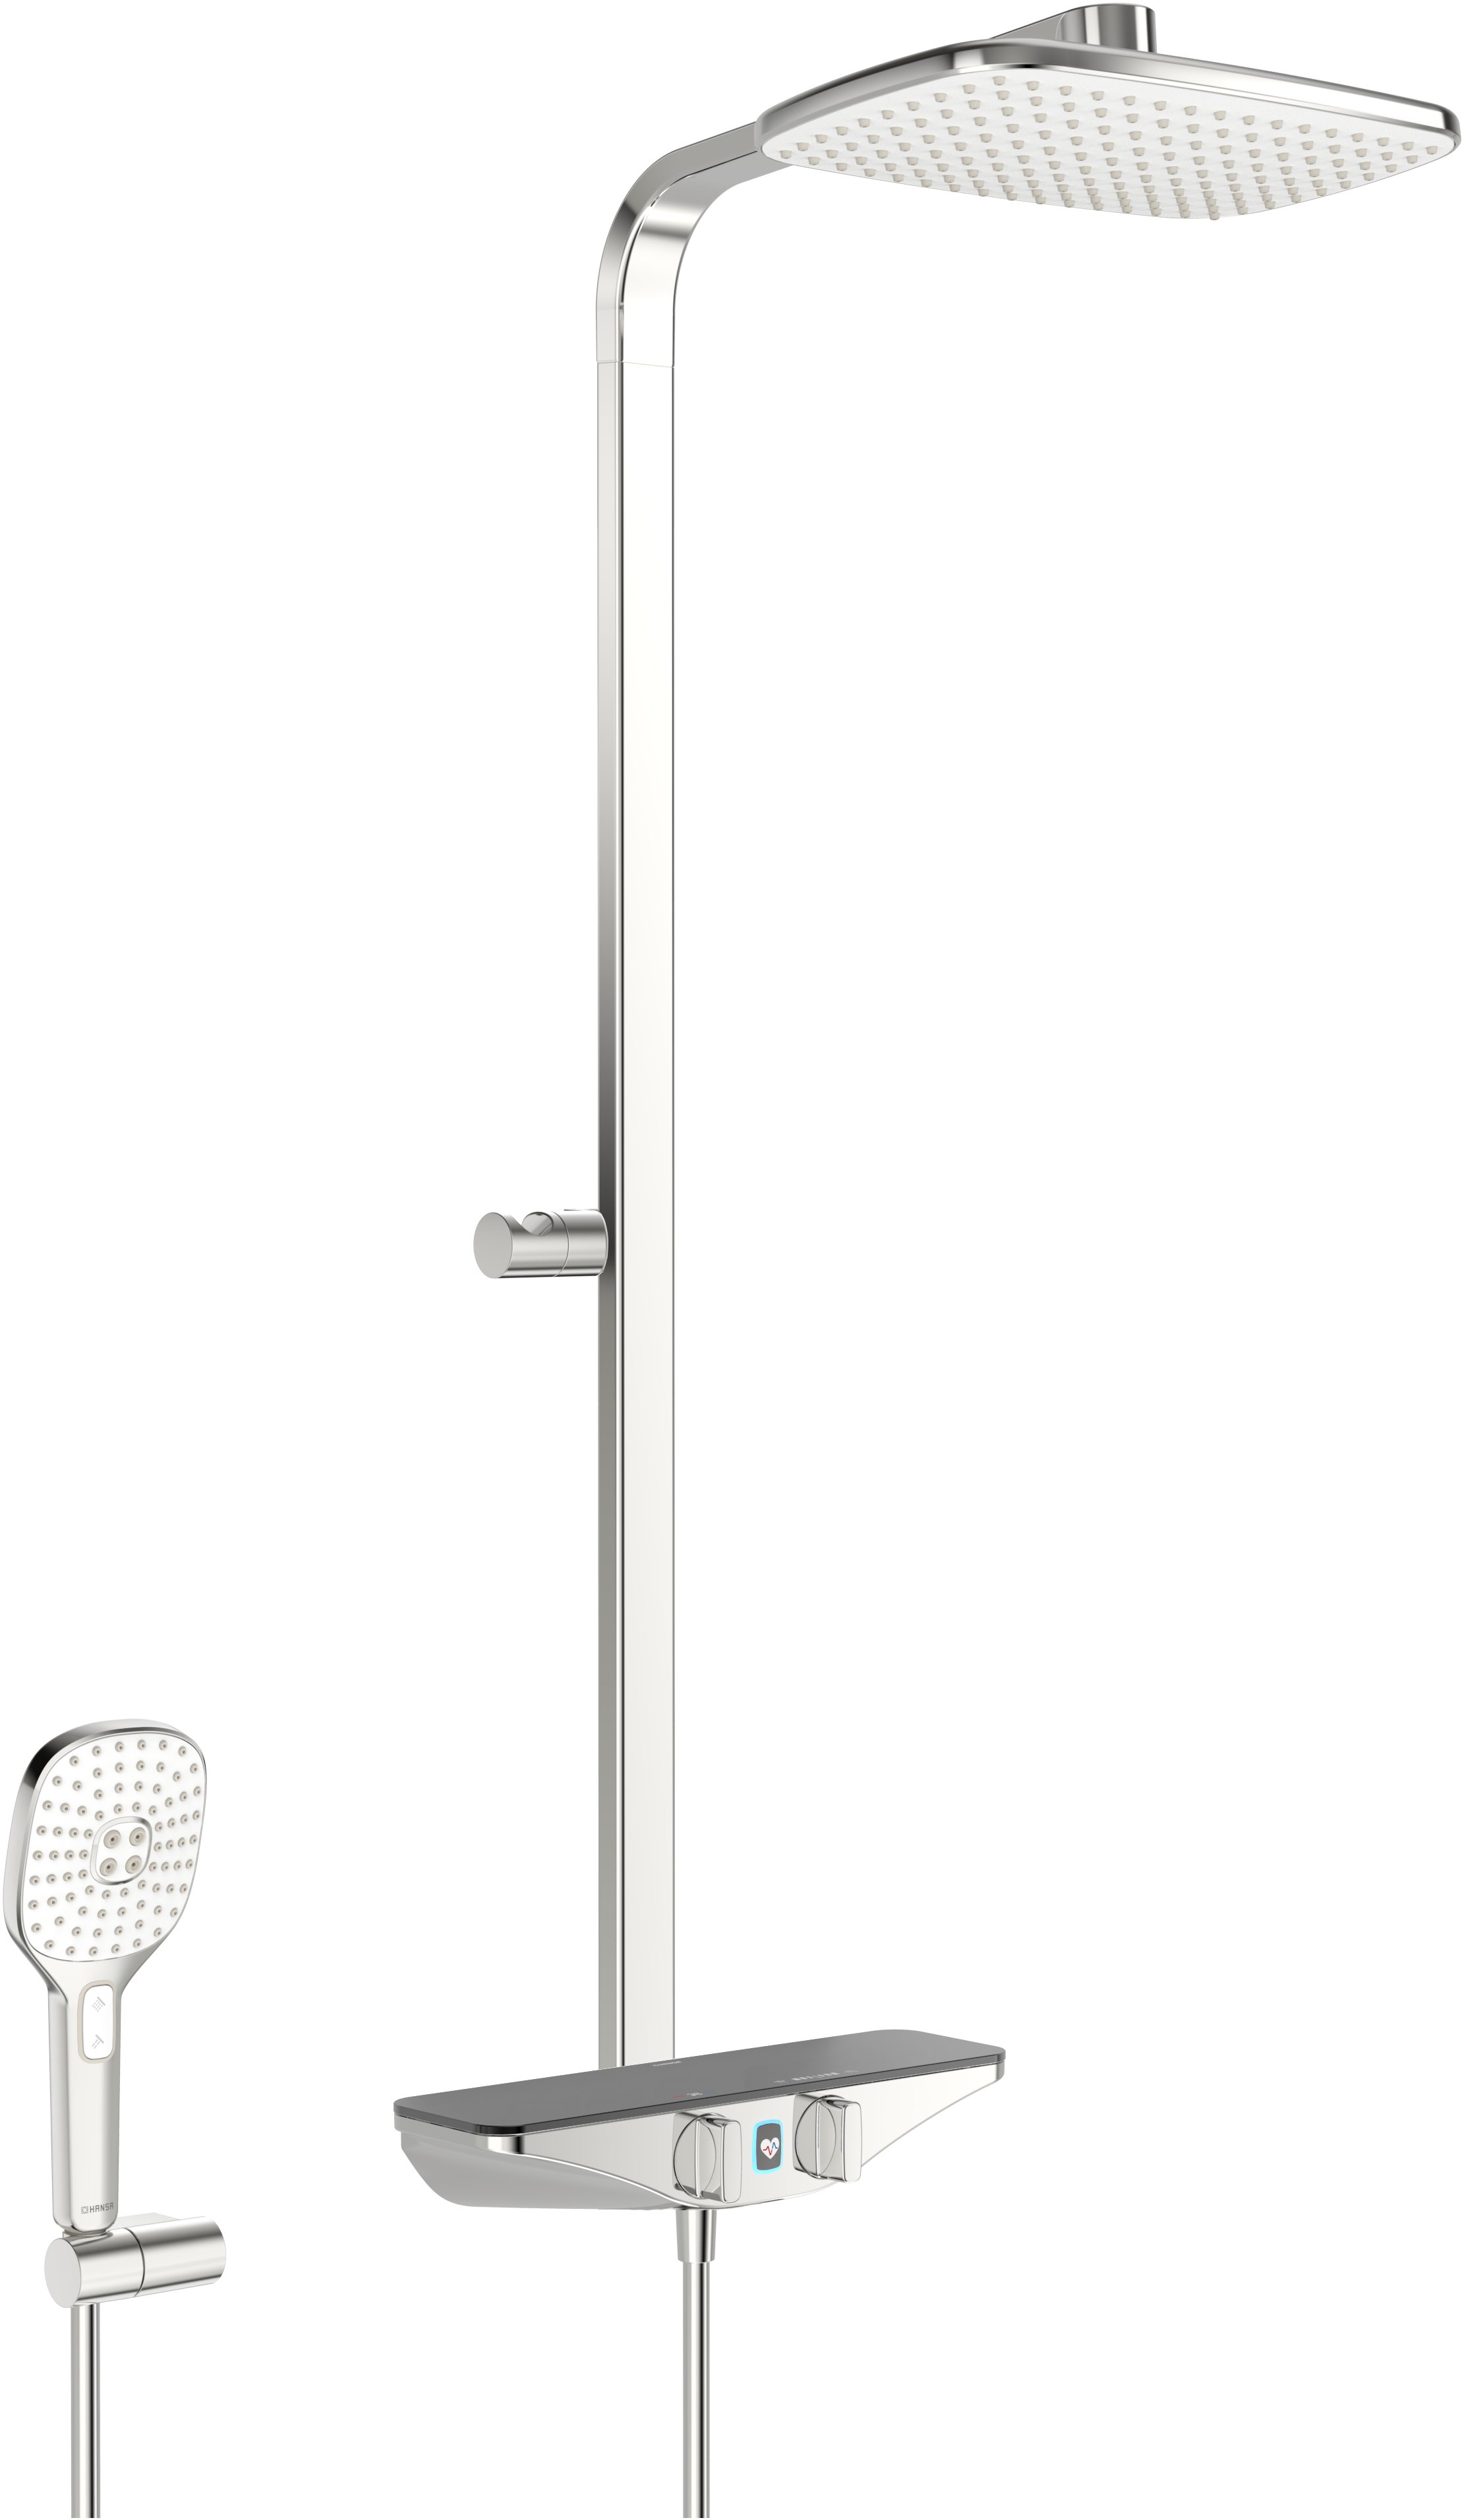 Hansa Hansaemotion Wellfit sprchový systém - nástěnná termostatická sprchová baterie, polička antracit 5865017284